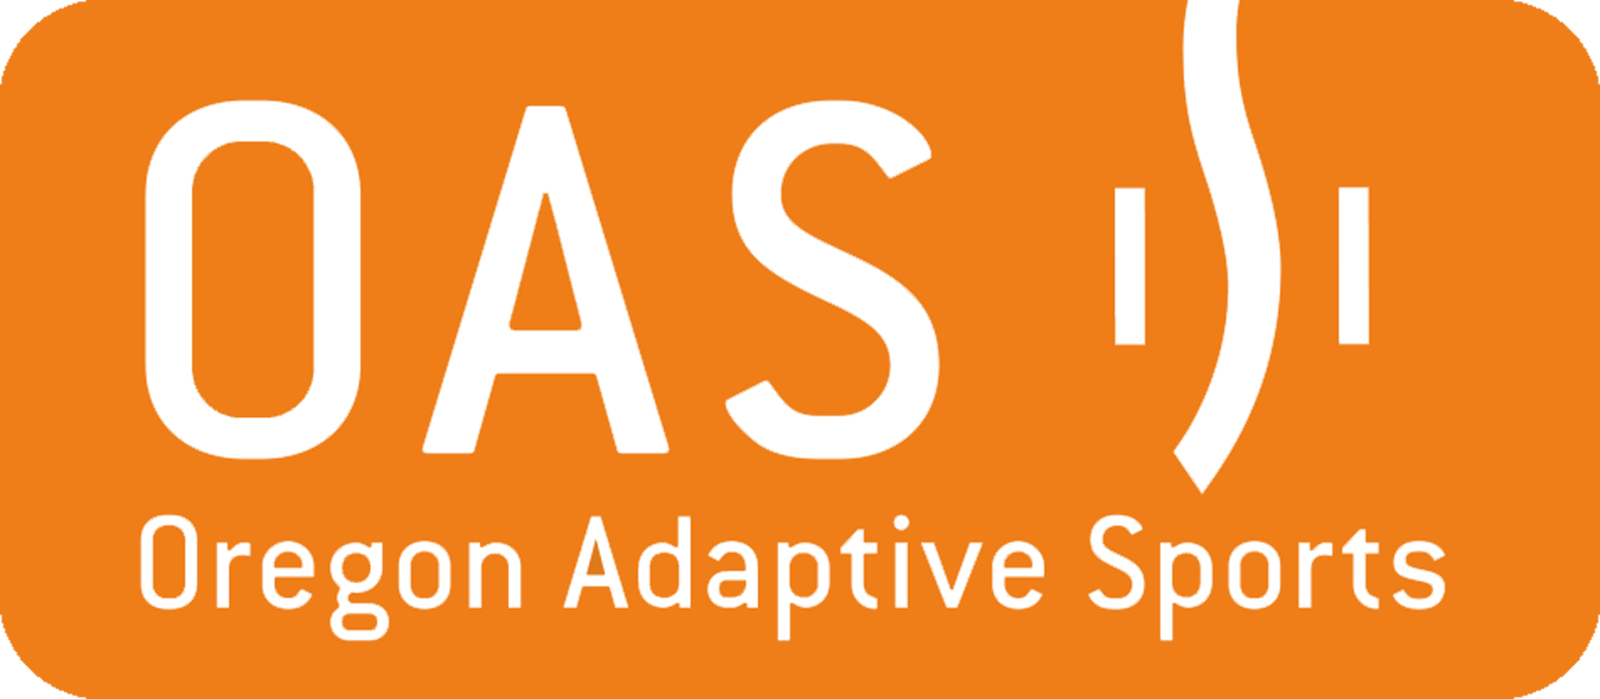 Orange OAS text logo